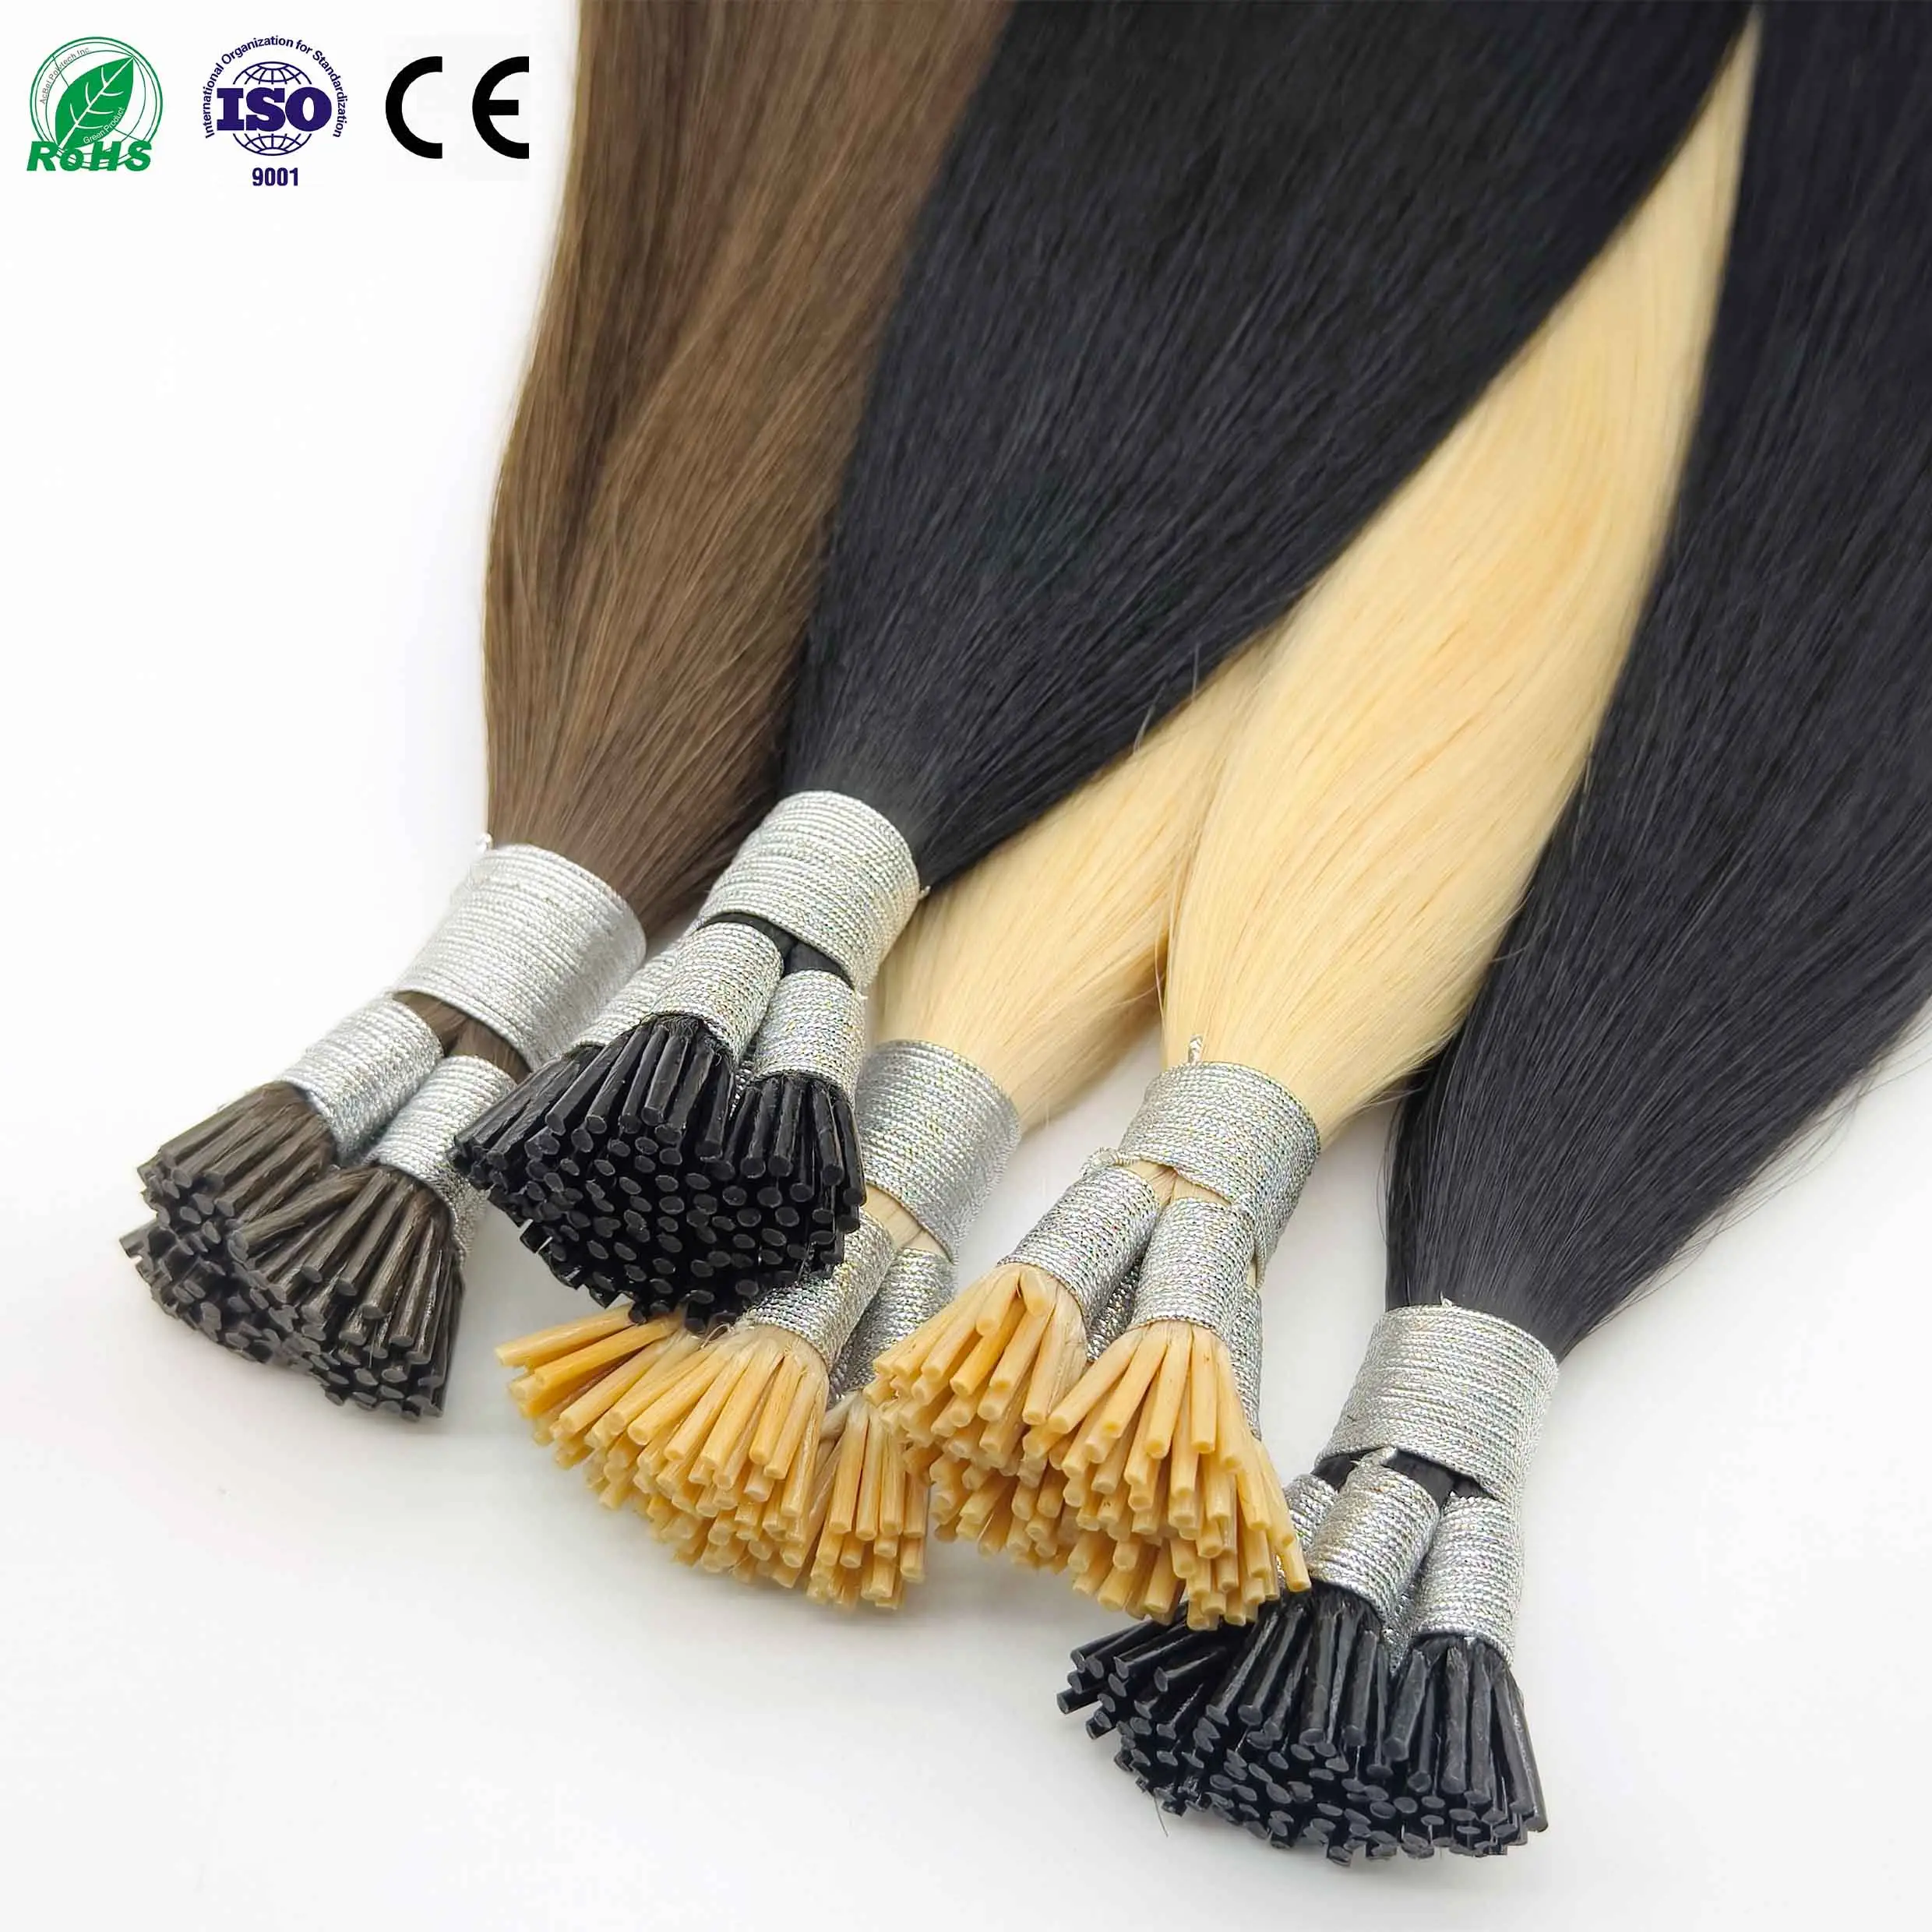 وصلات إطالة الشعر من Fasimer مصنوعة في الصين من الشعر الأصلي للبيع بالجملة وصلات إطالة الشعر بالجملة